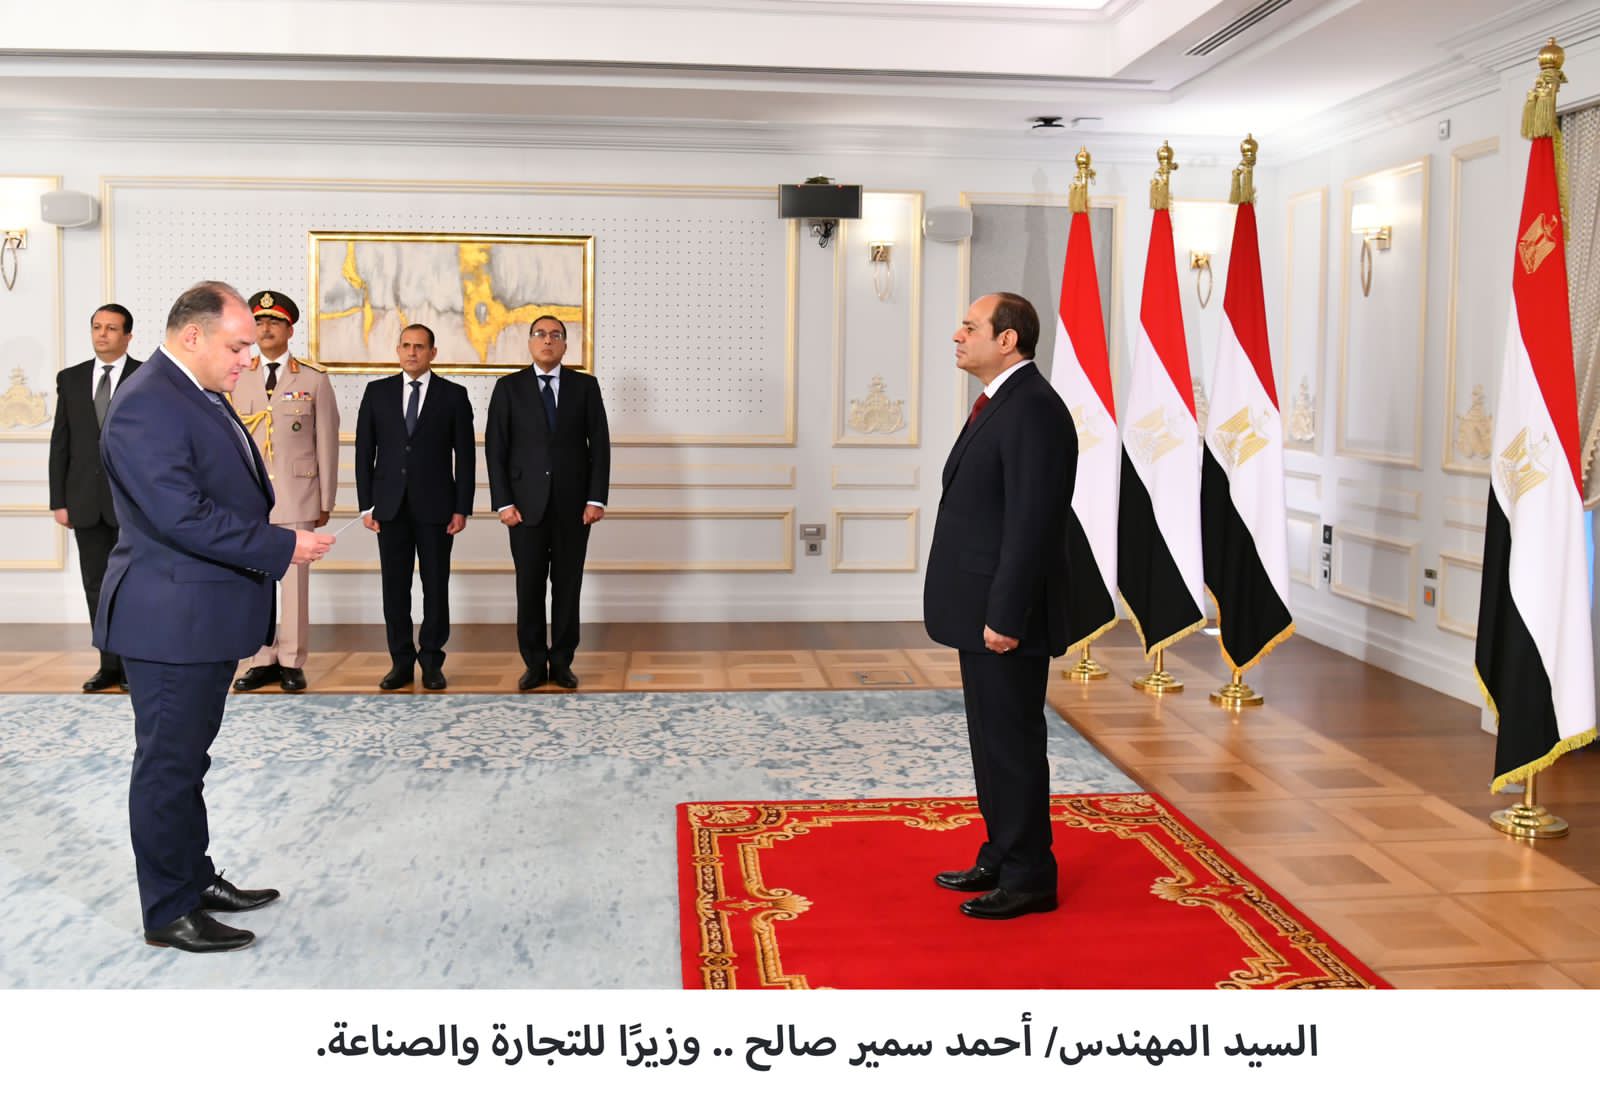  الرئيس السيسي يشهد أداء الوزراء الجُدد اليمين الدستورية 